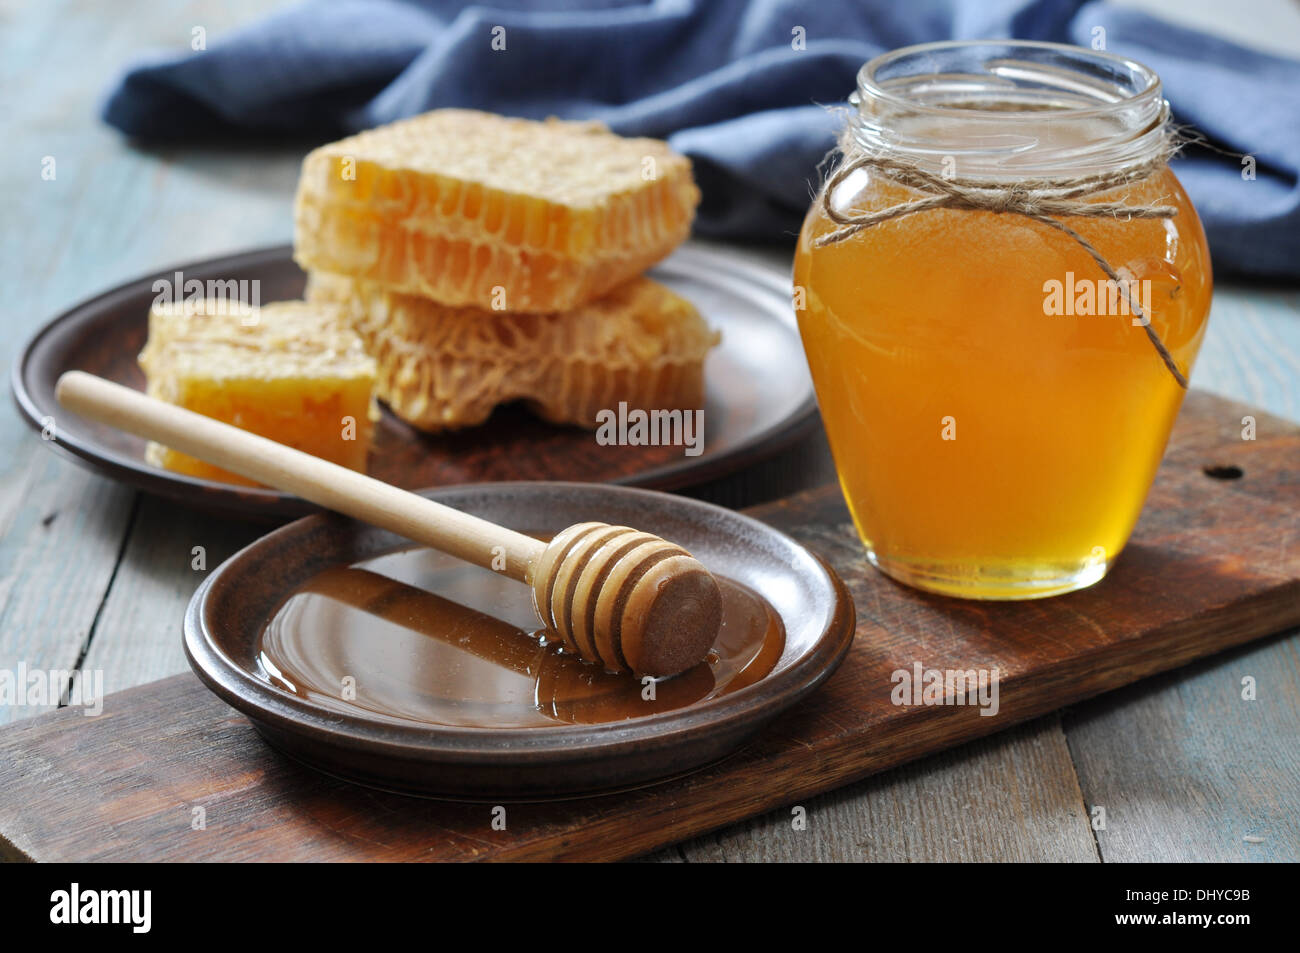 Honig im Glas mit Waben auf Vintage Holz-Hintergrund Stockfotografie - Alamy